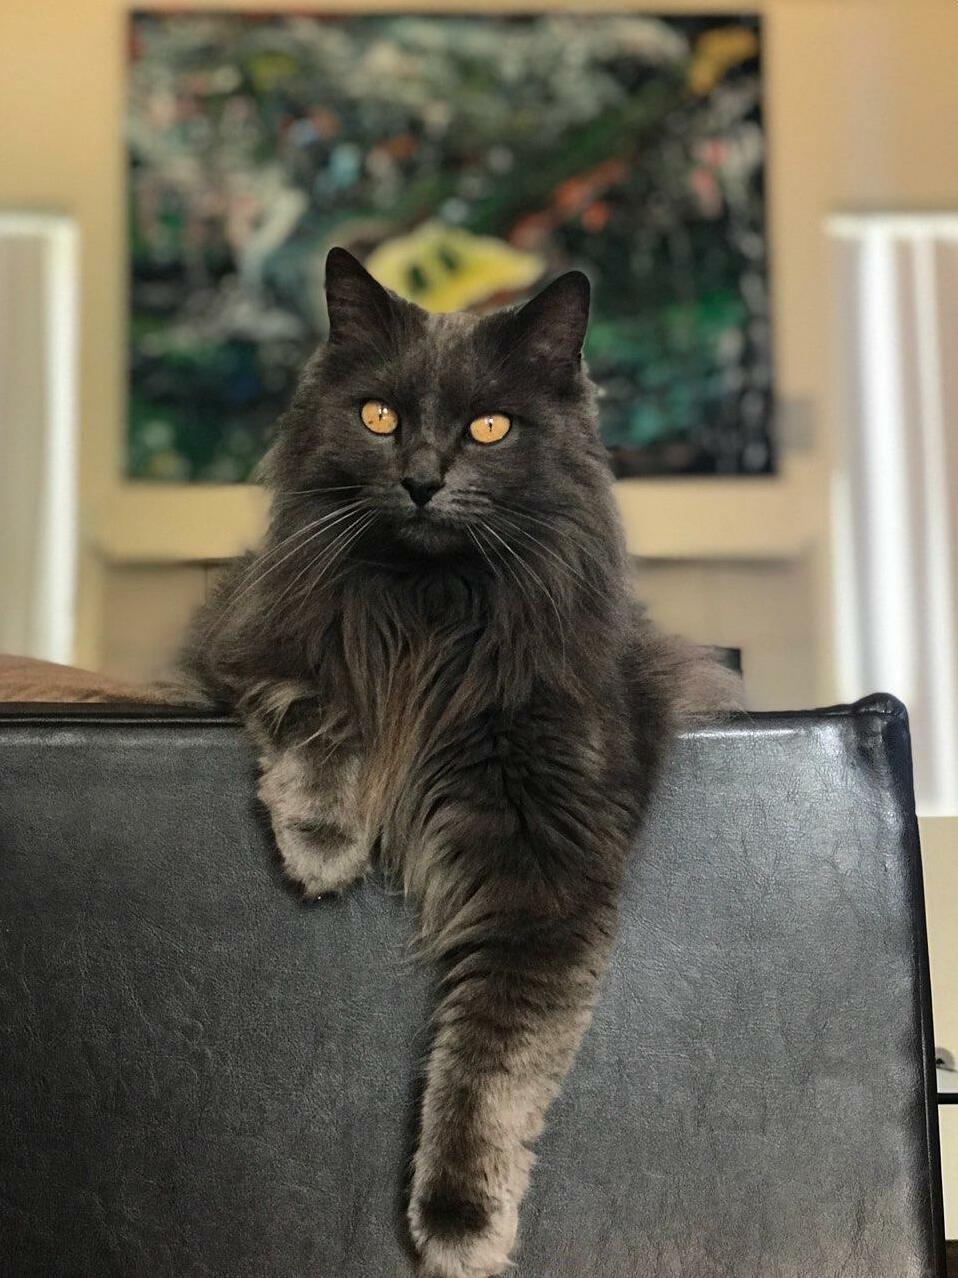 My cat jasper looking majestic